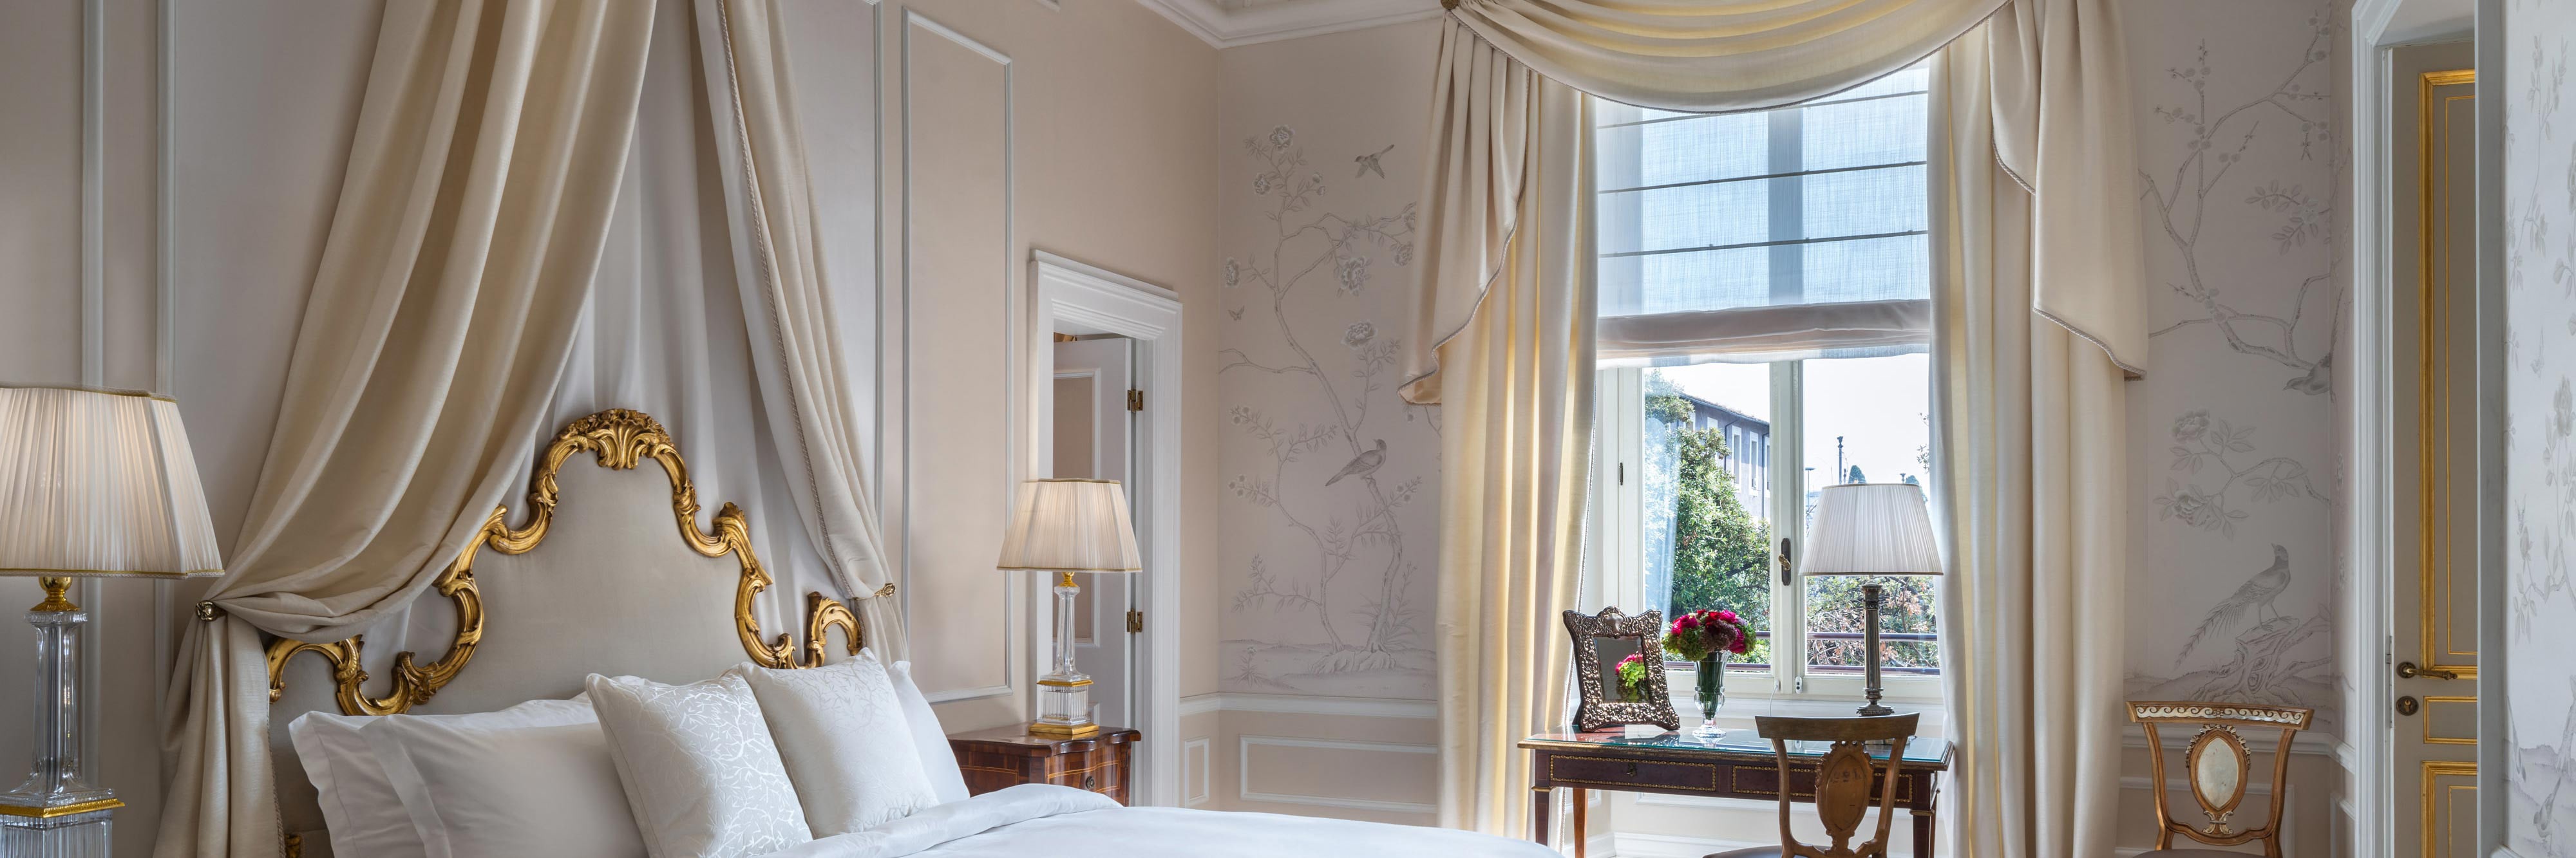 Royal suite bedroom